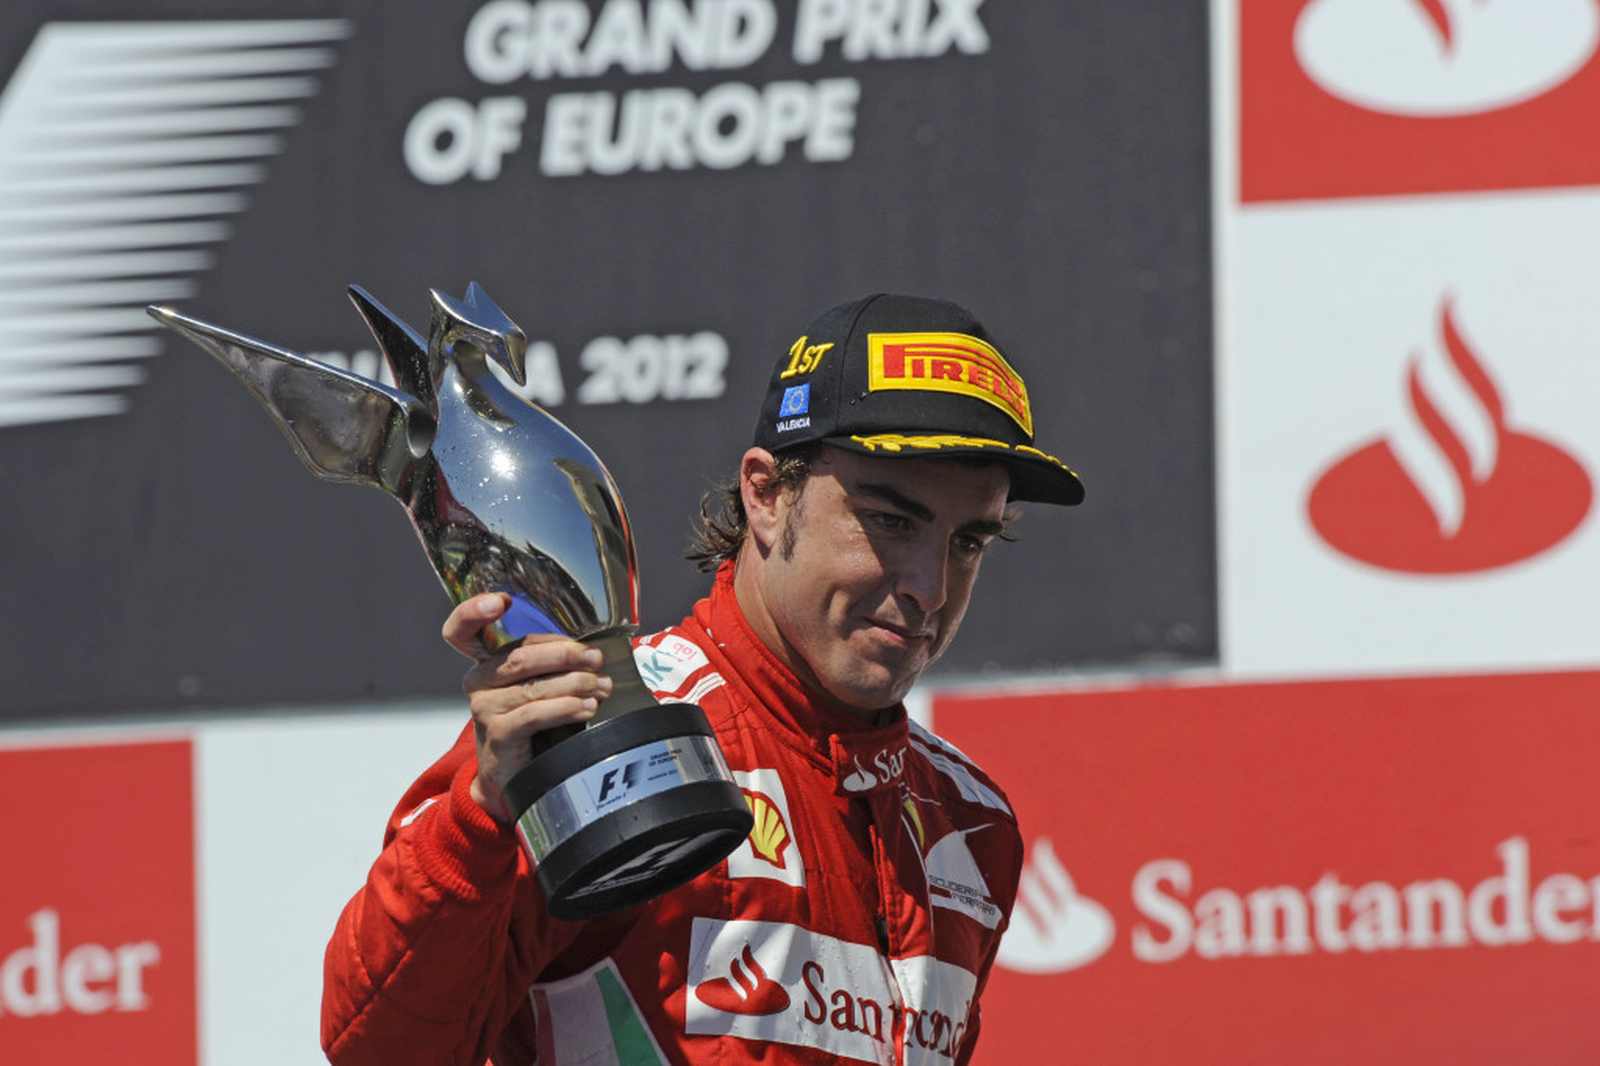 5º - Fernando Alonso - Nacionalidade: Espanhol - Quantidade de pódios conquistados com a Ferrari: 44